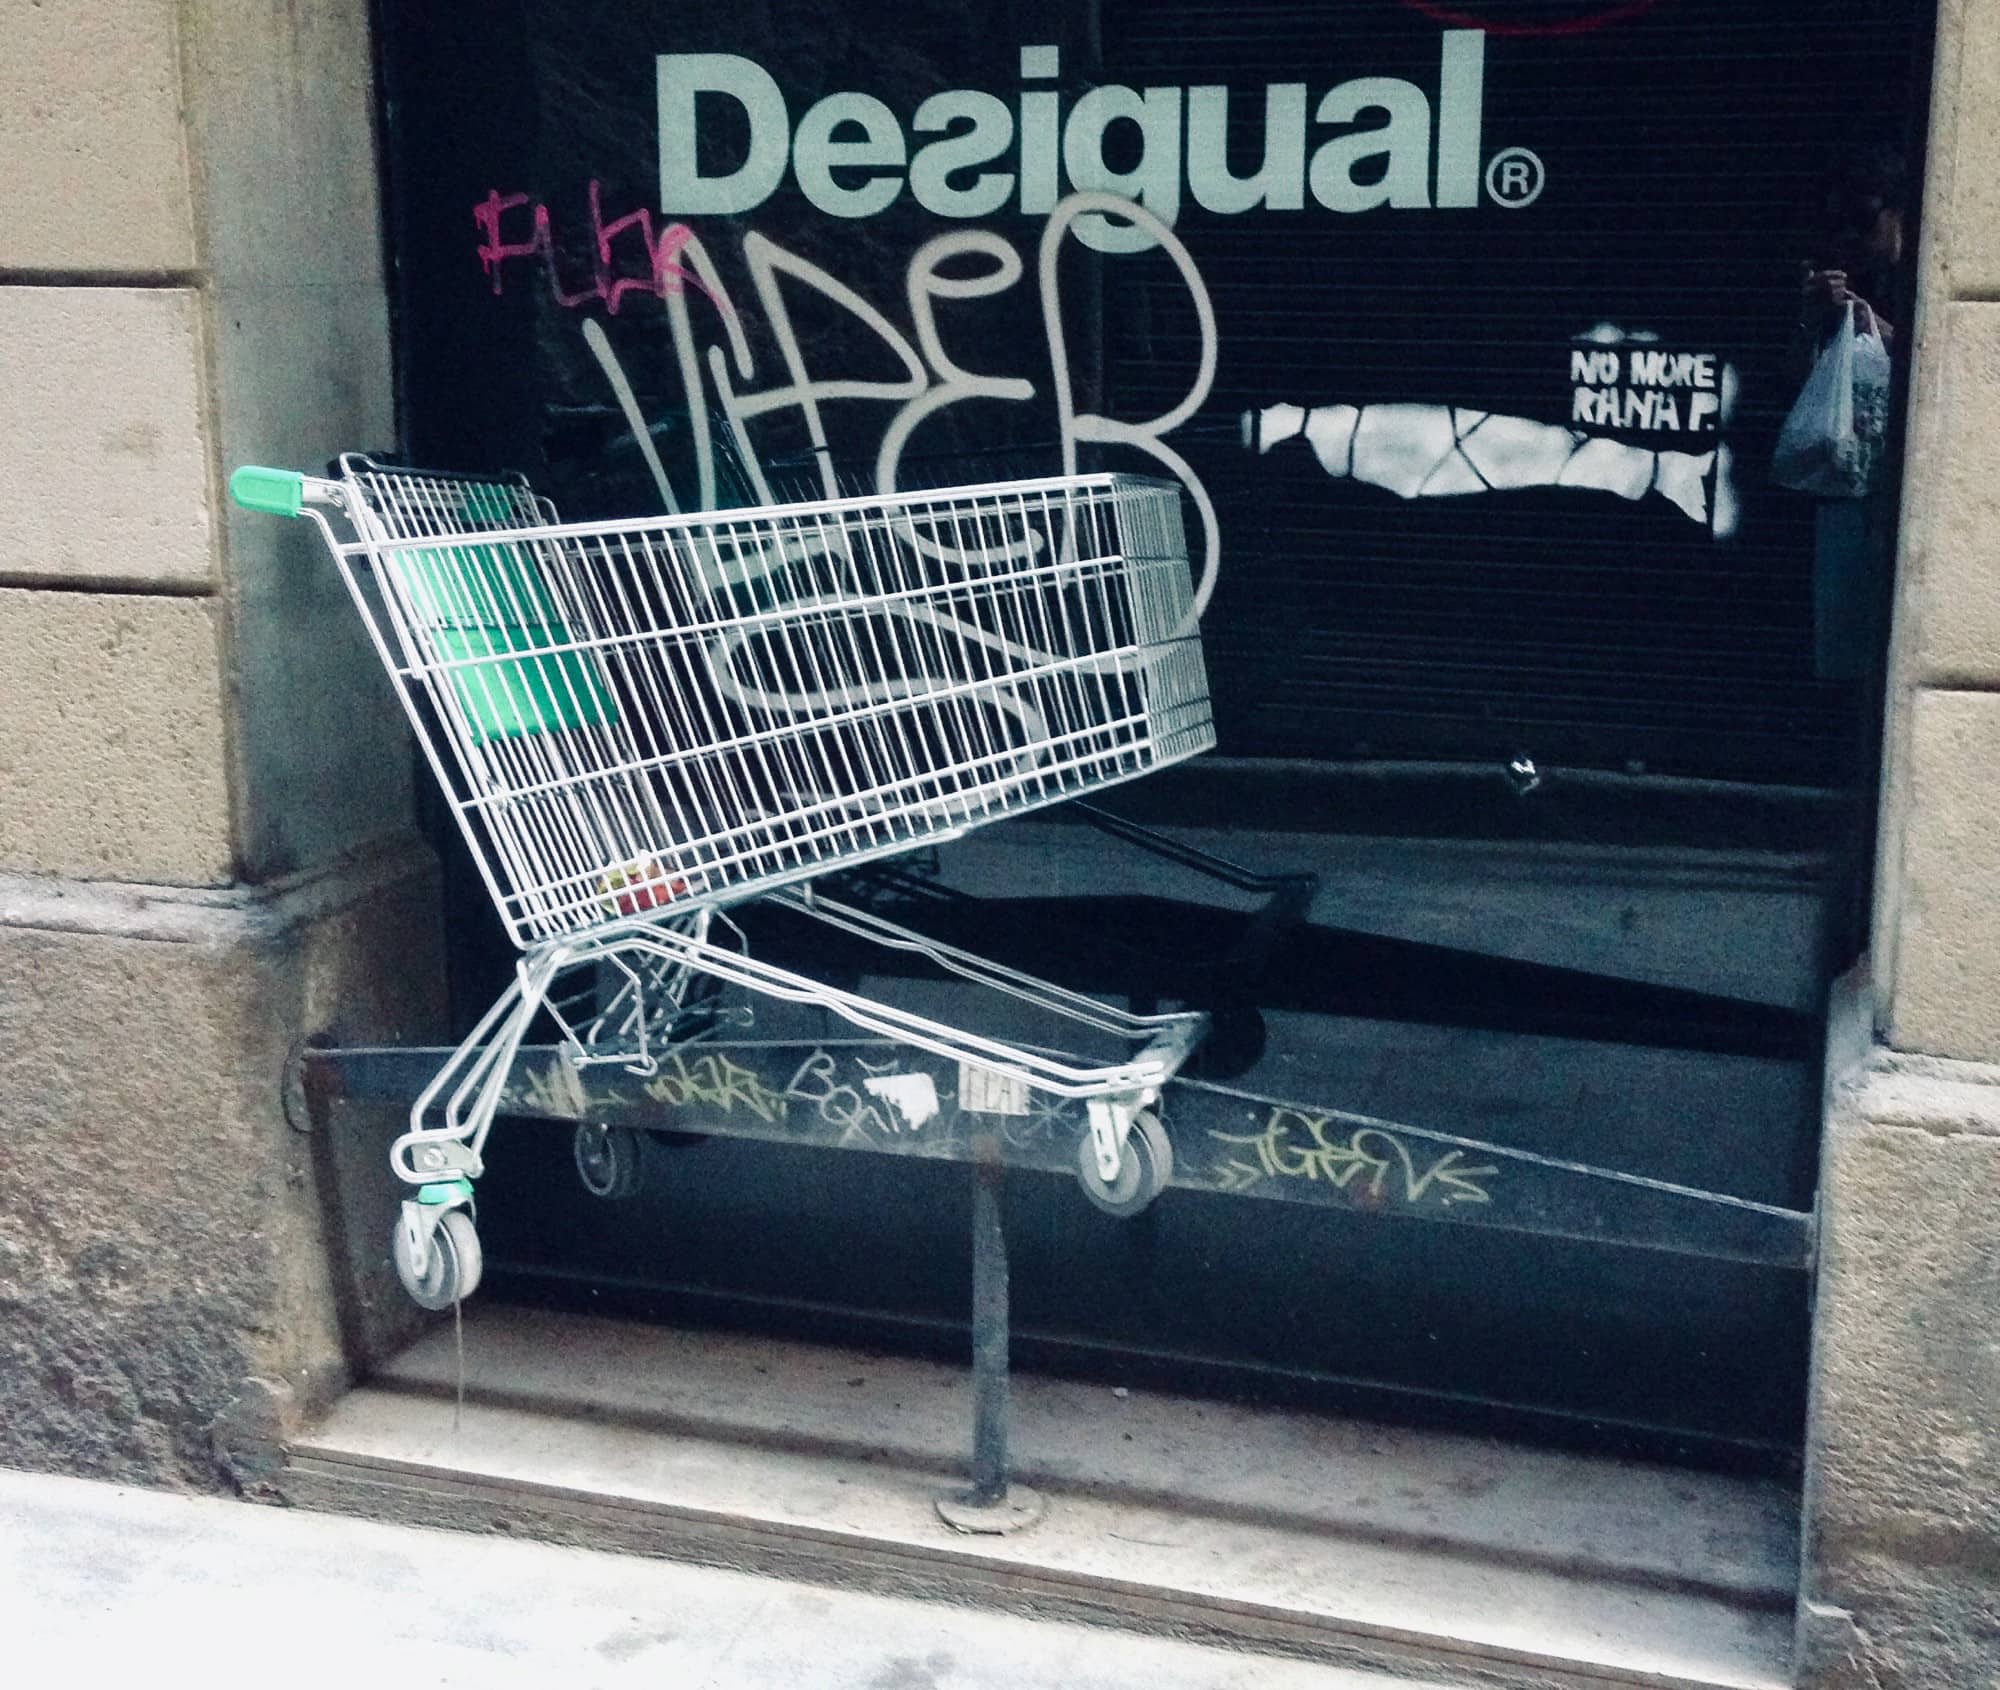 Shopping cart/refund metaphor.